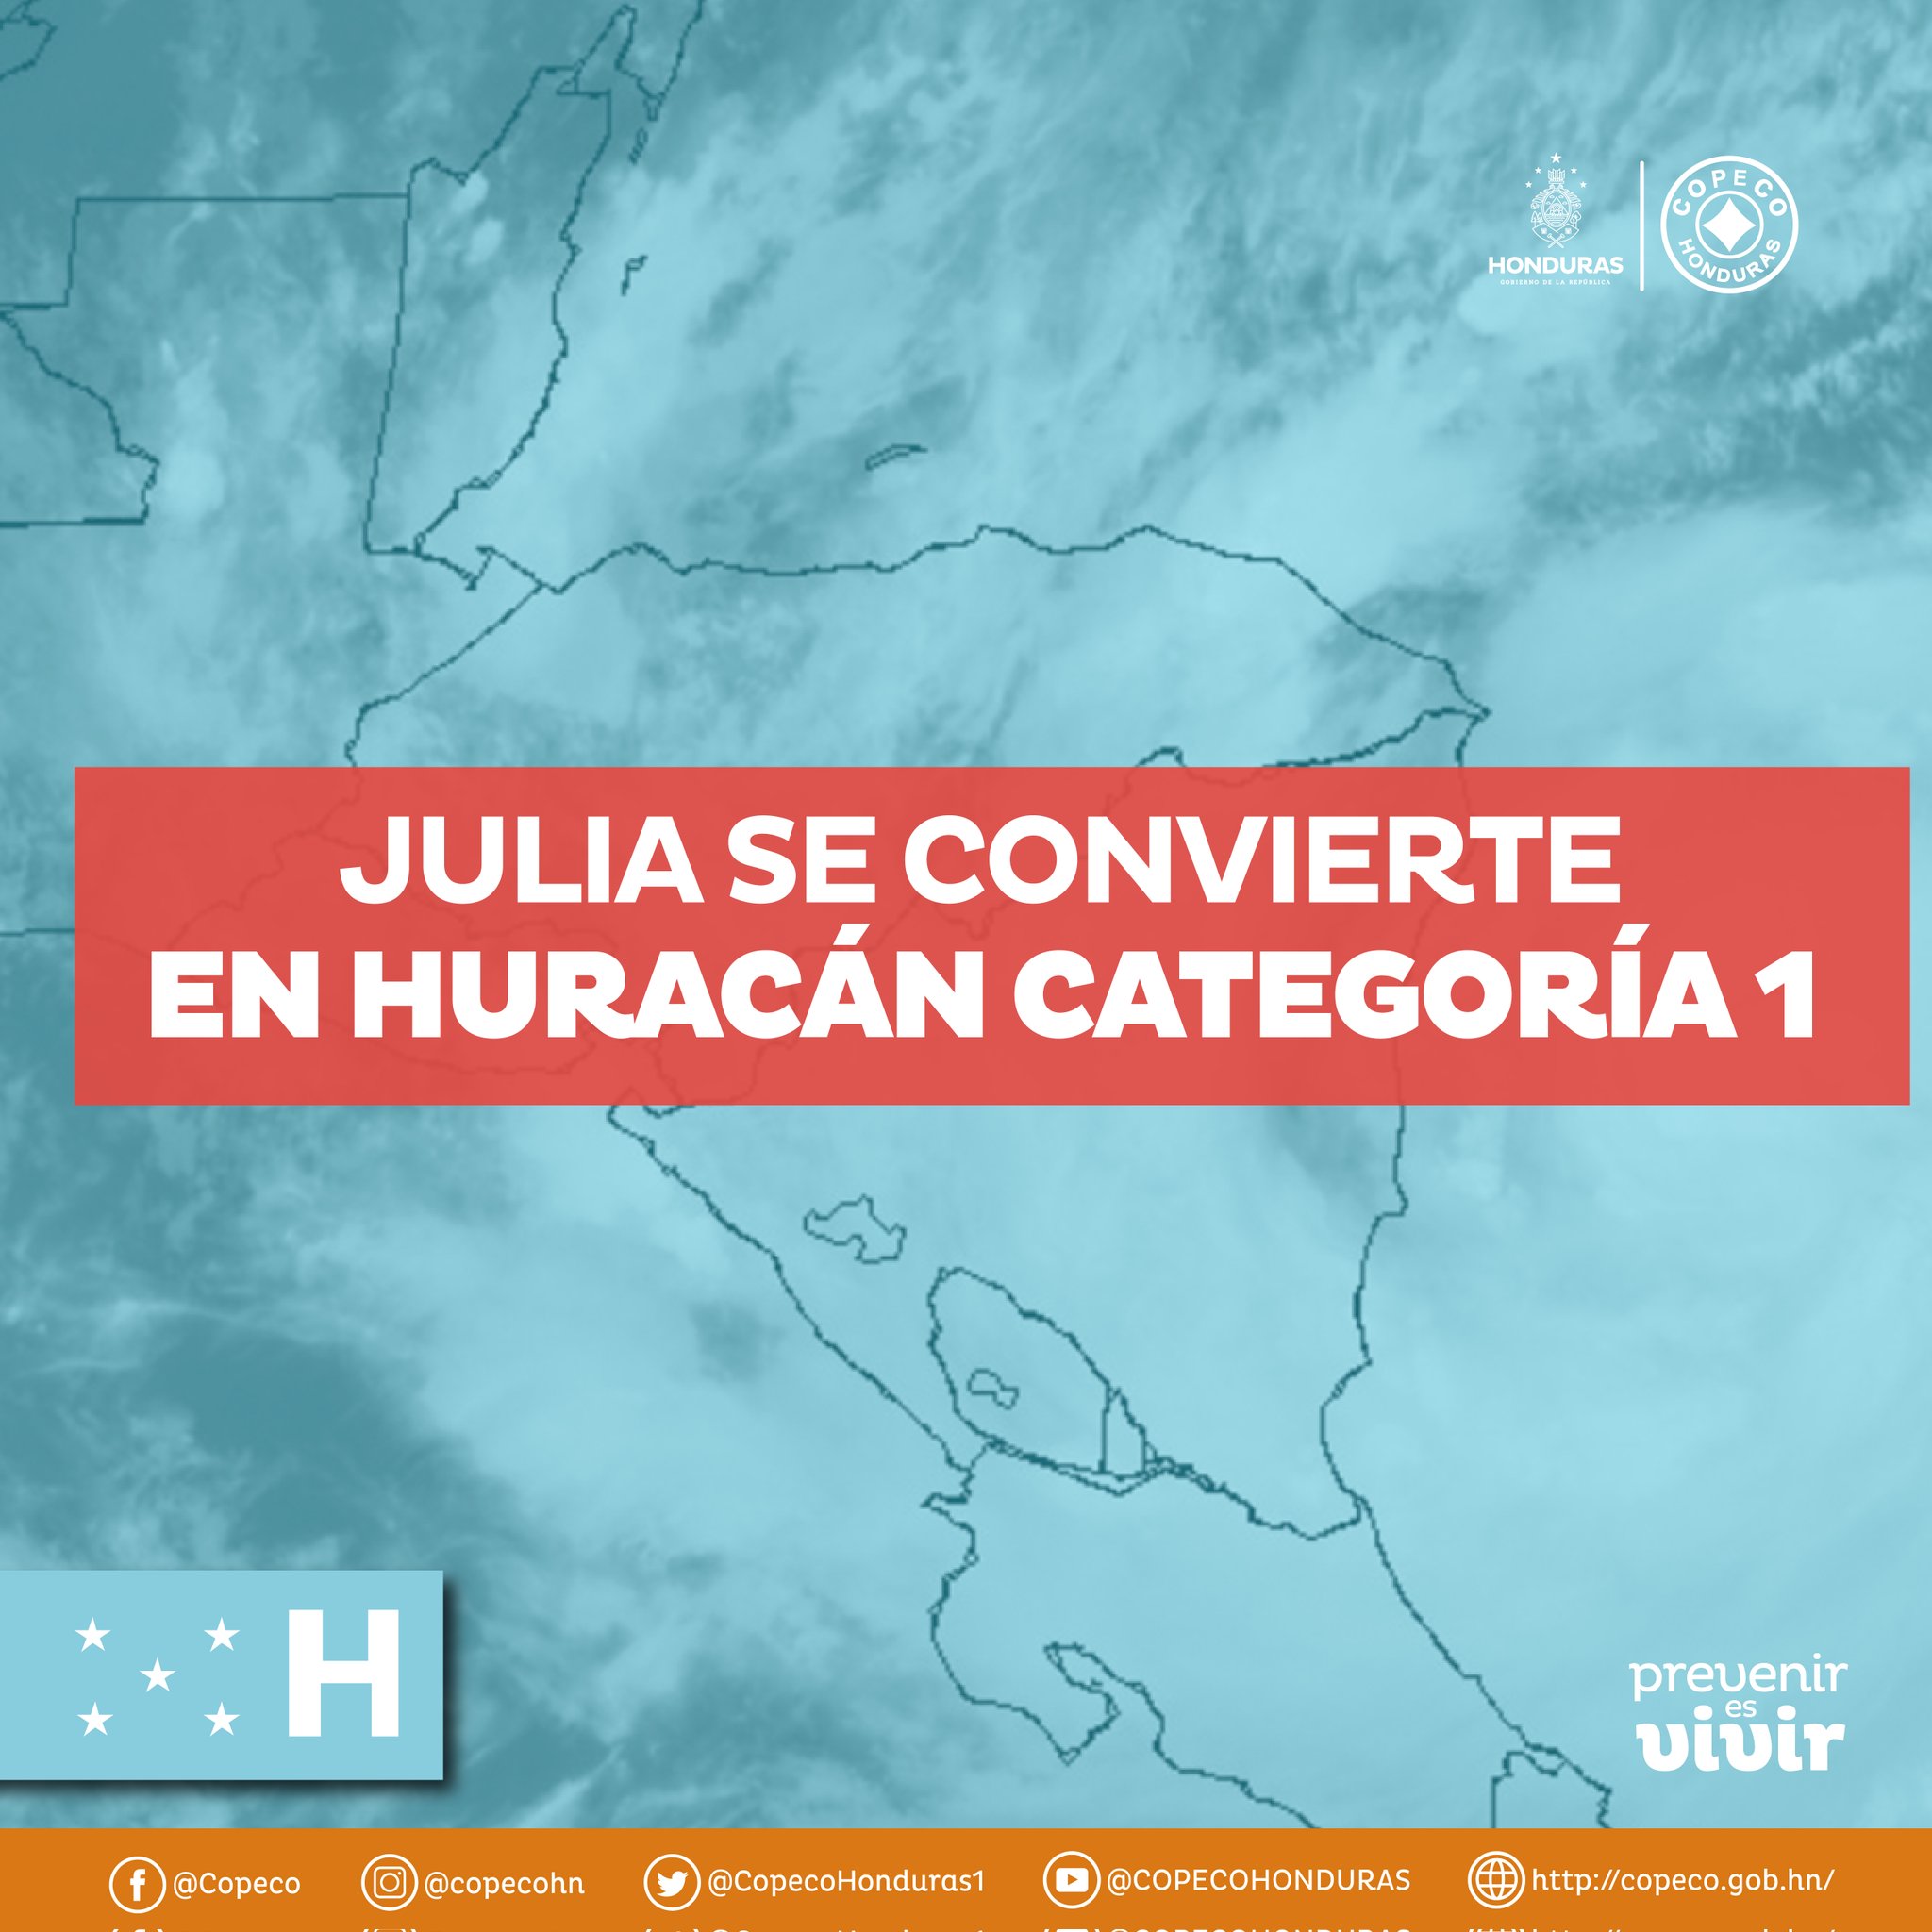 Julia es huracán categoría 1. 